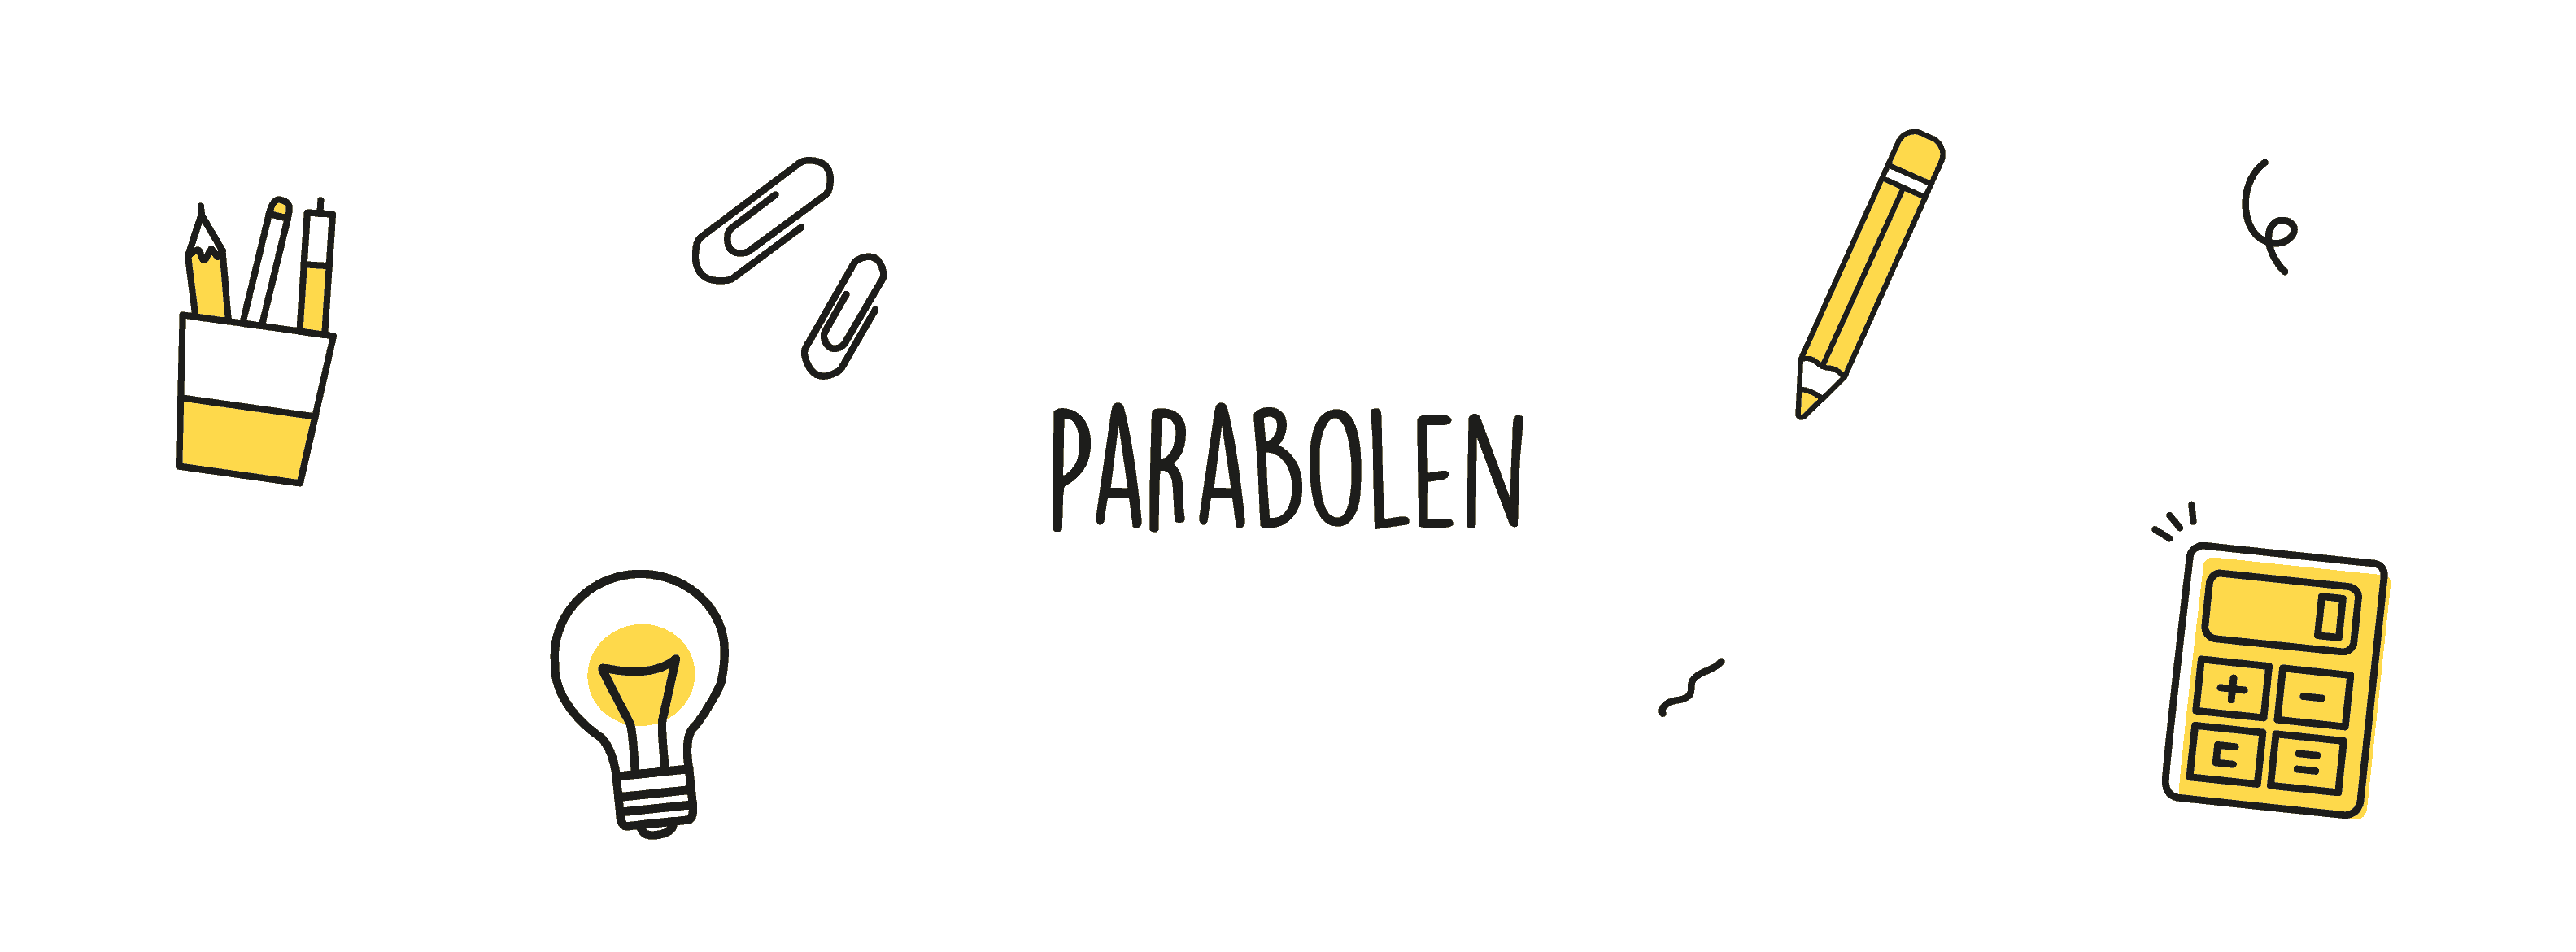 Parabolen